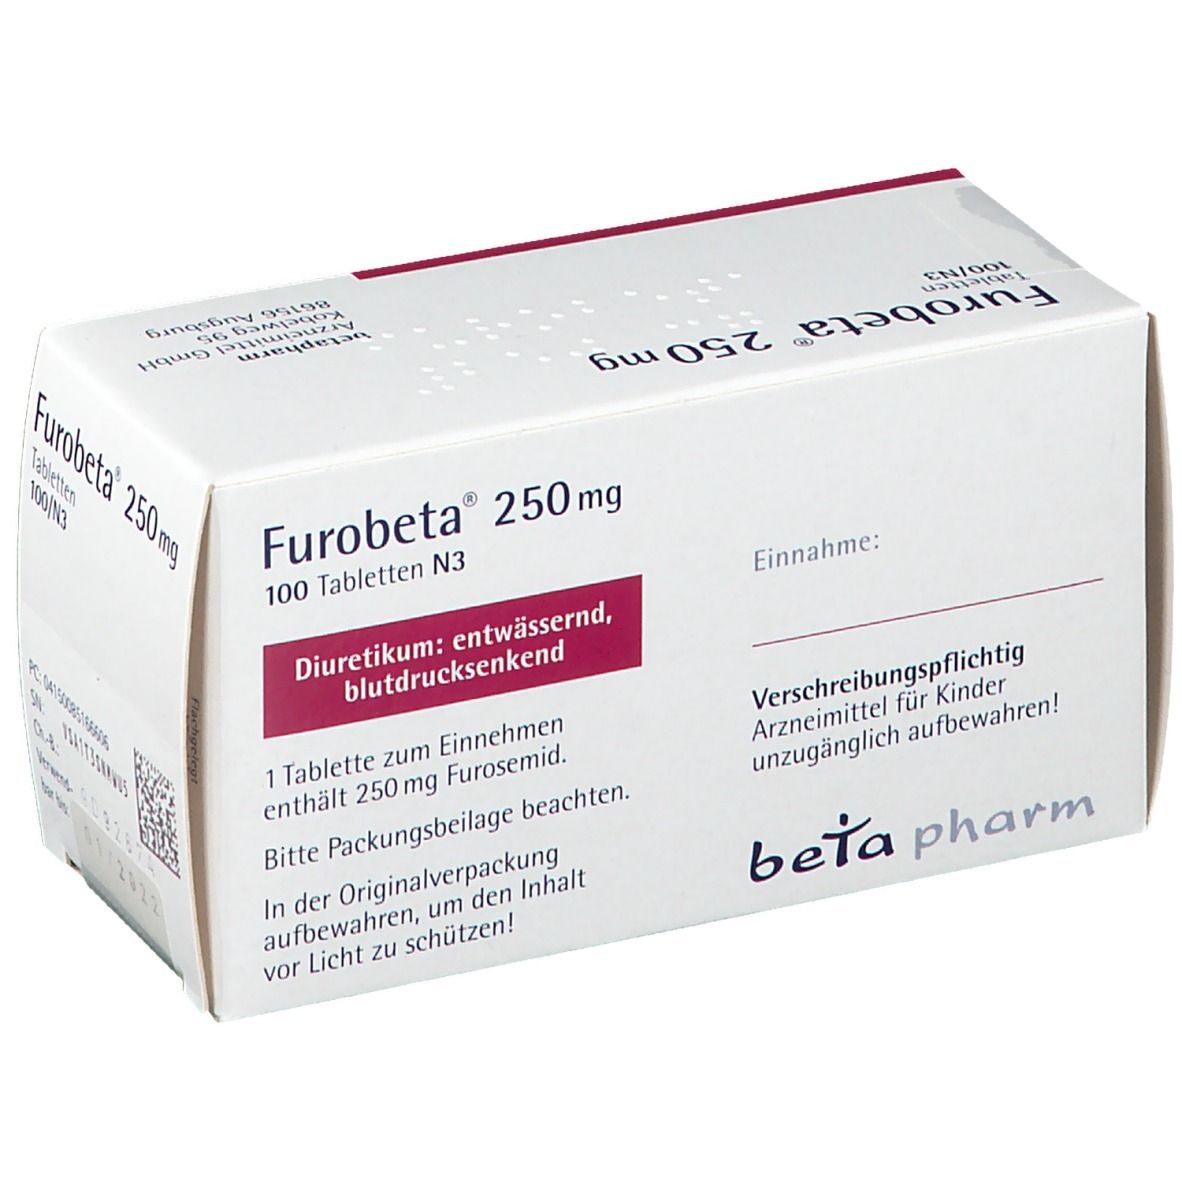 Furobeta® 250 mg